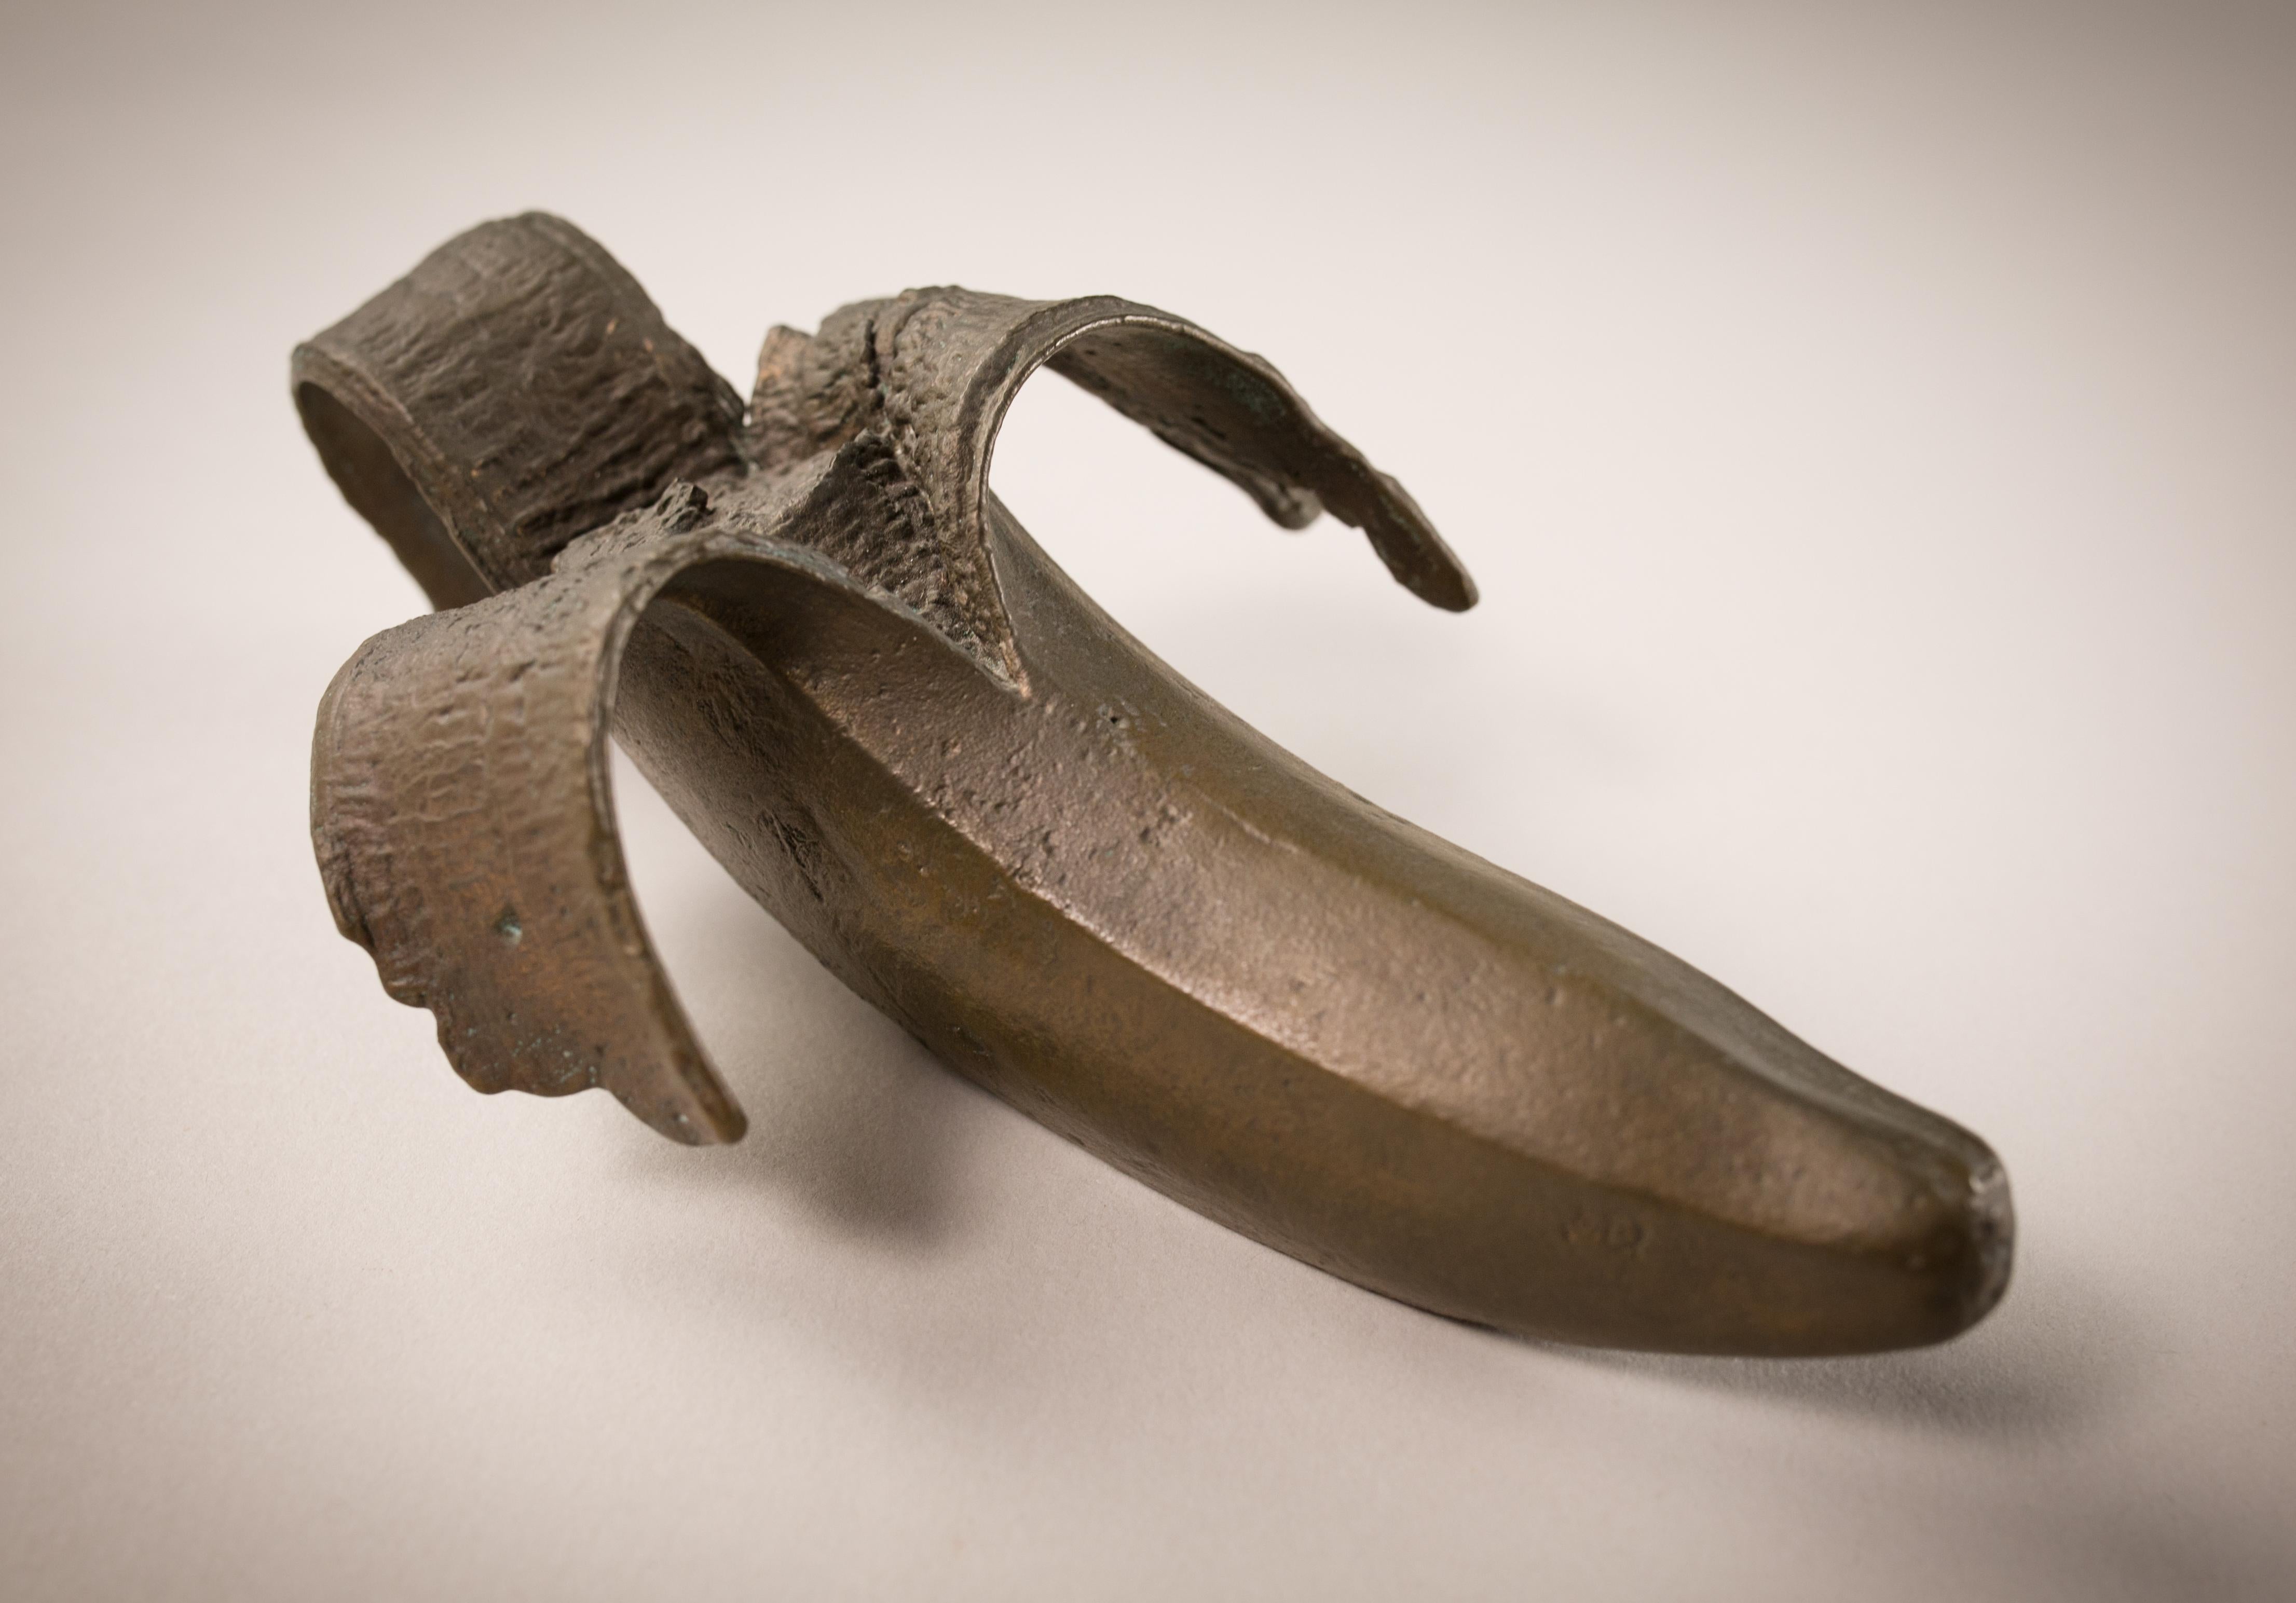 Burt Payne 3 Abstract Sculpture - Bronze Banana